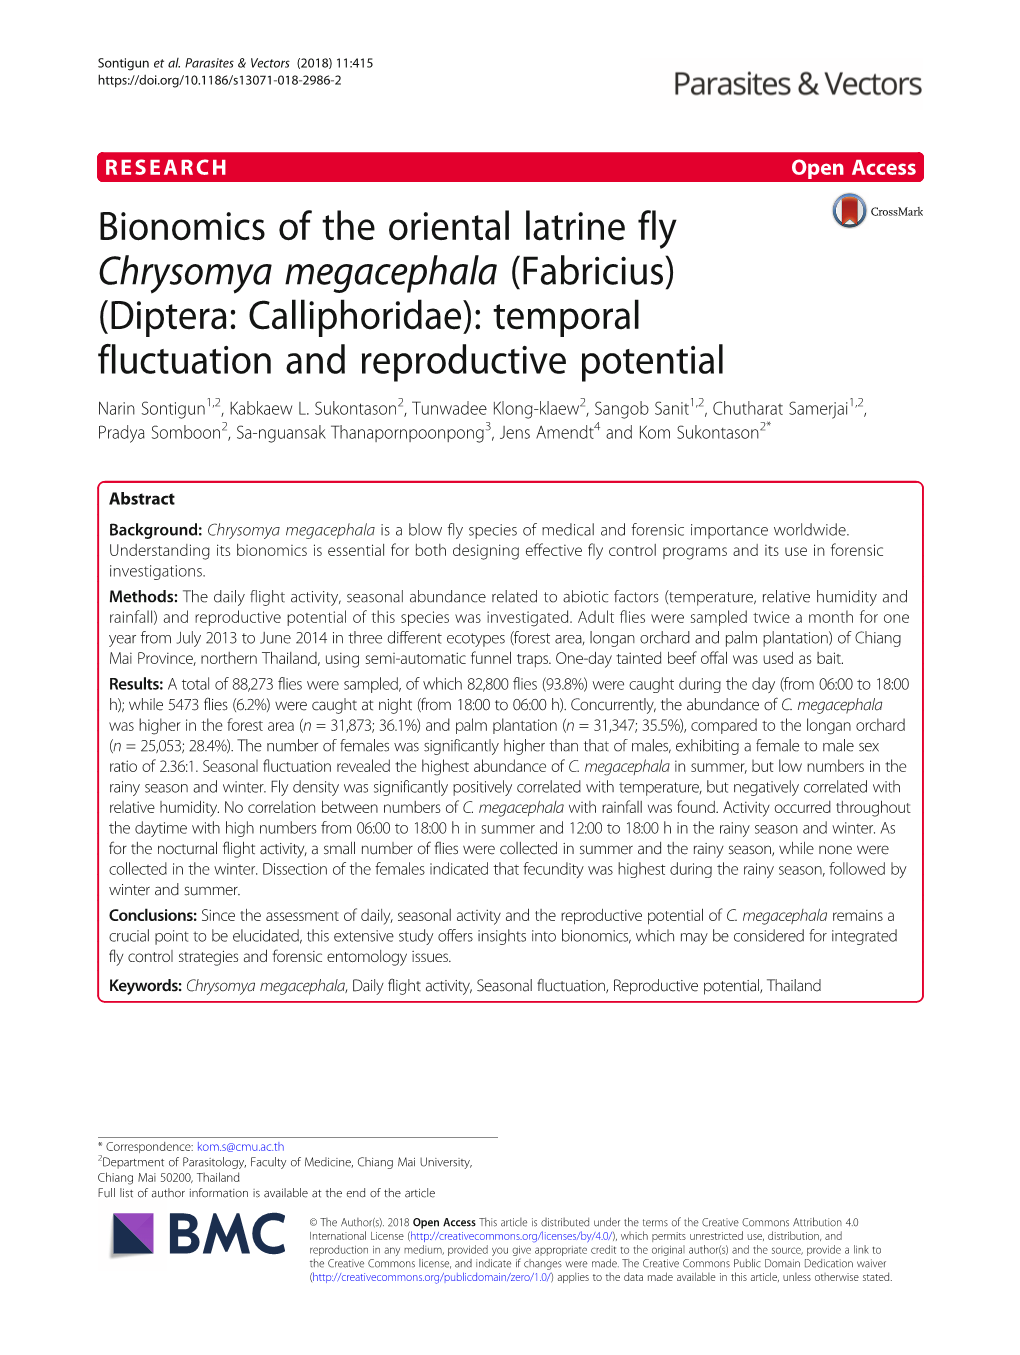 Bionomics of the Oriental Latrine Fly Chrysomya Megacephala